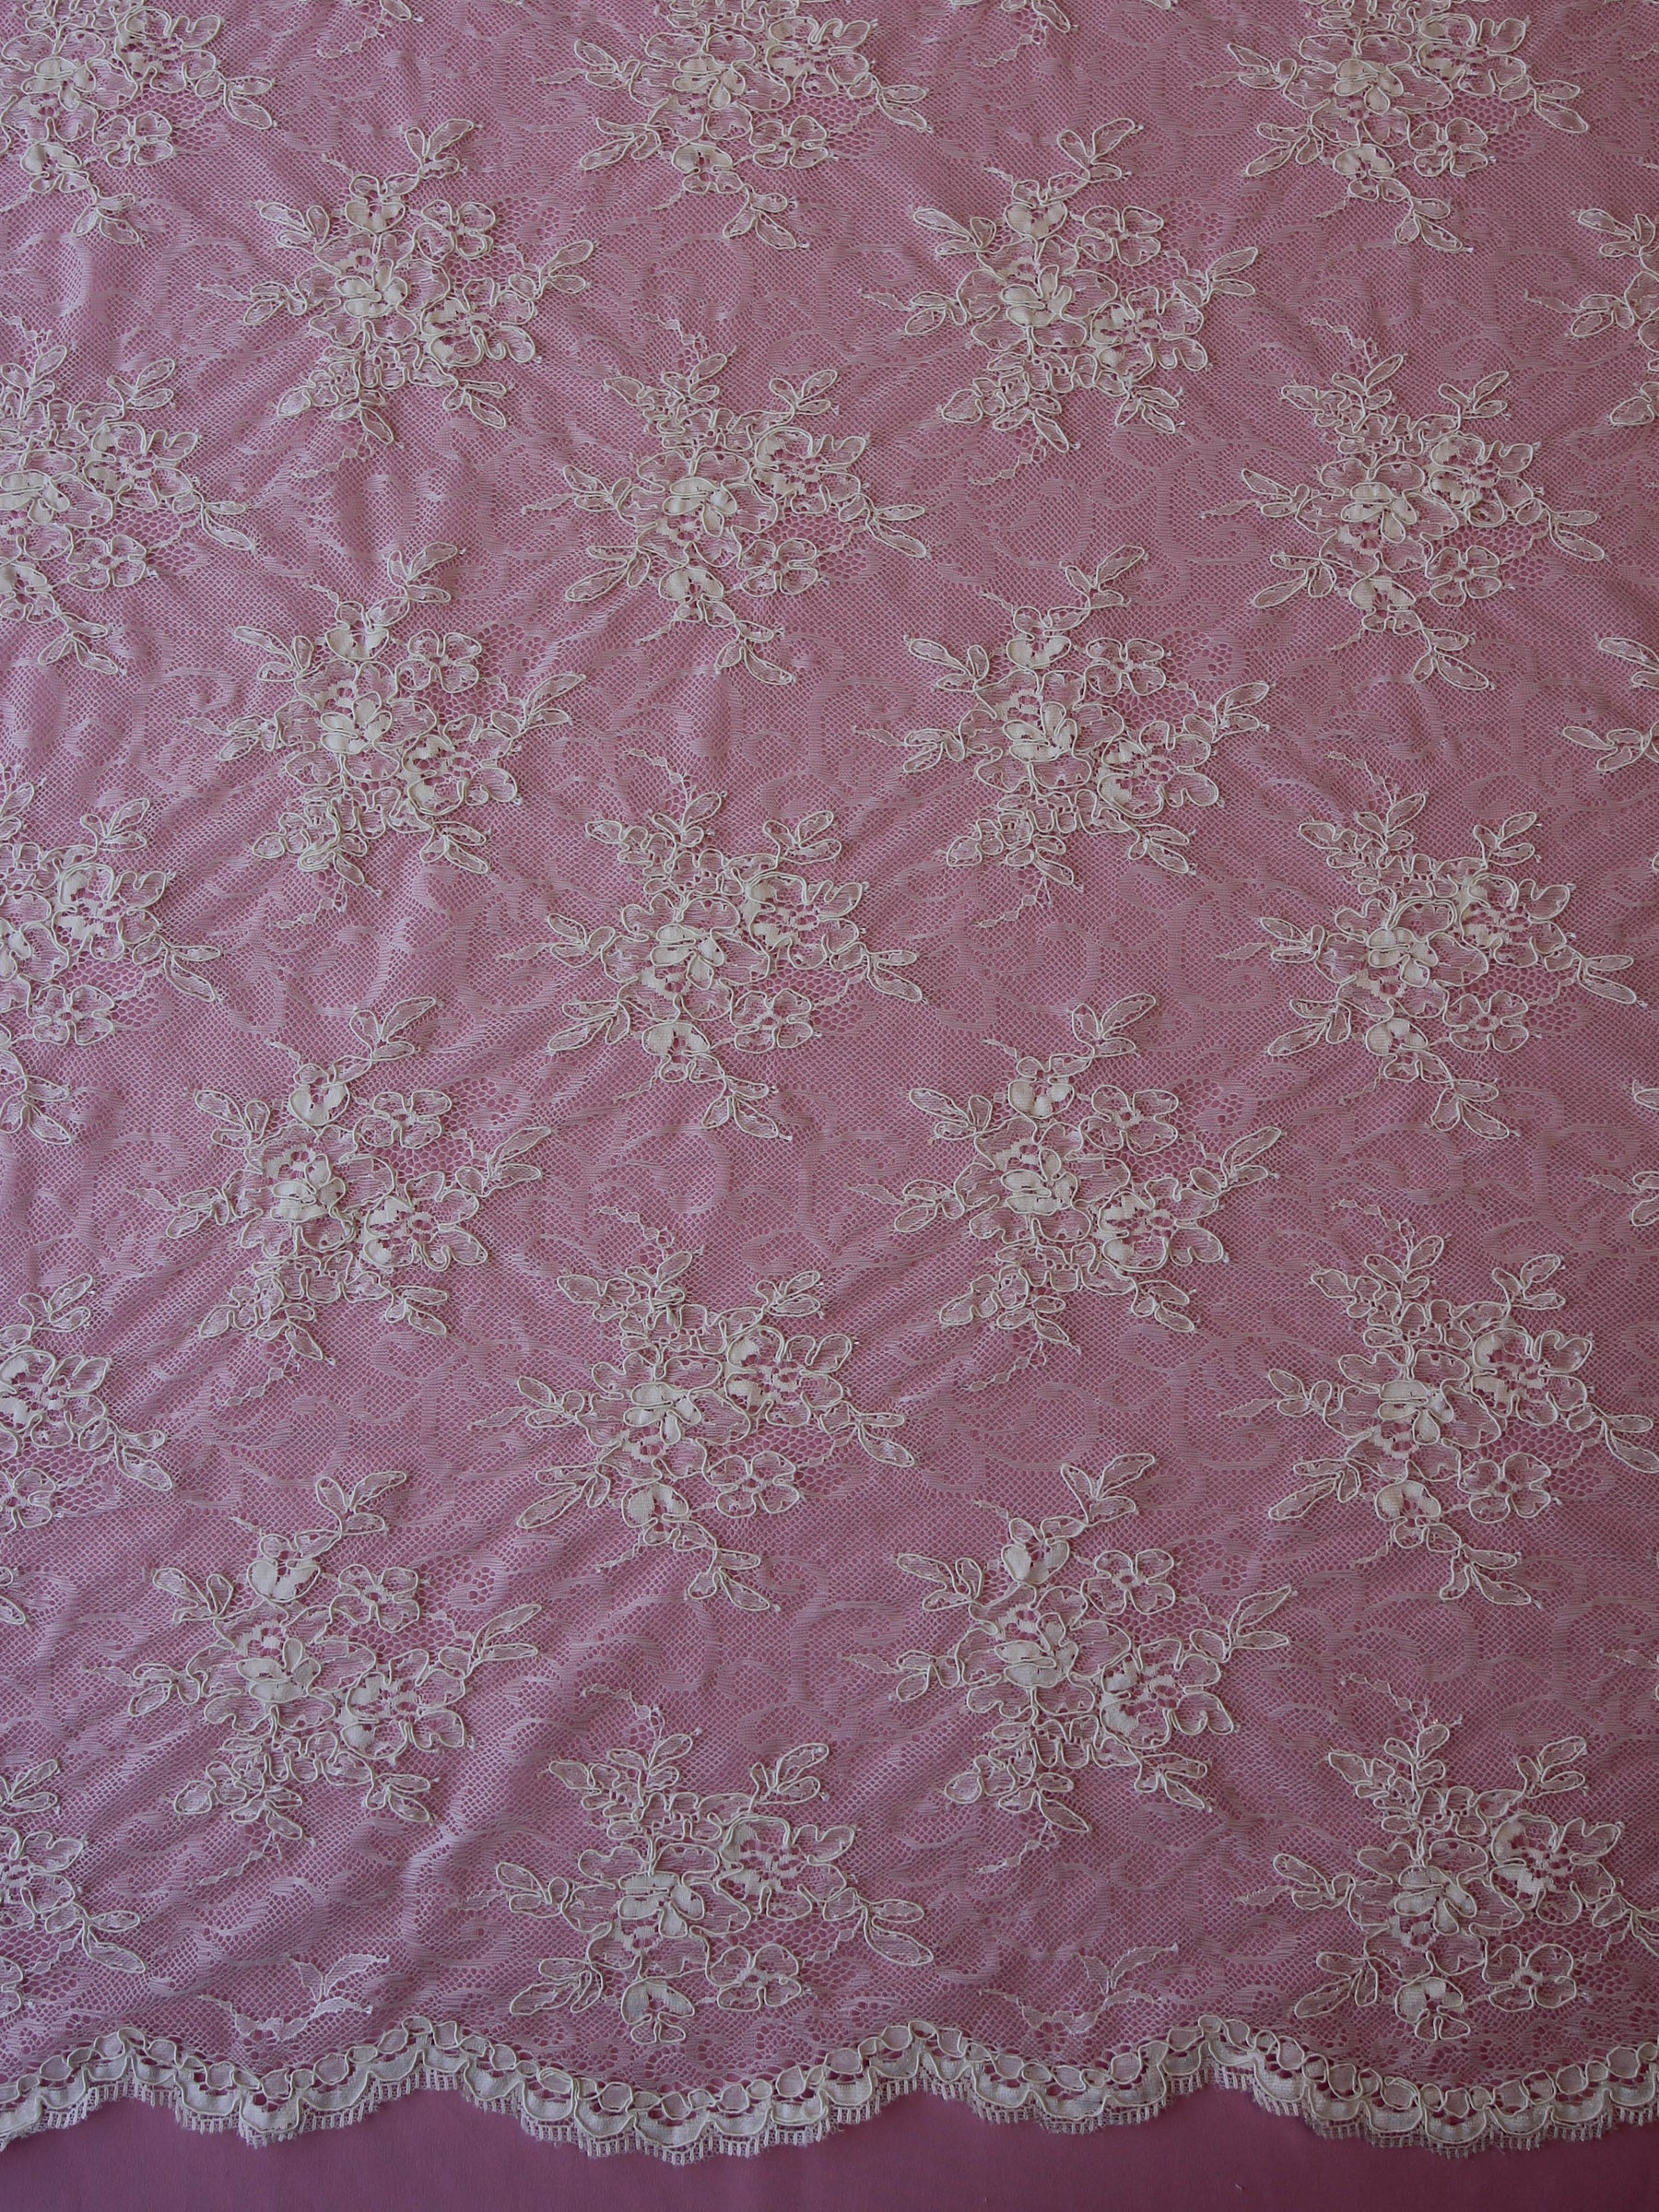 Corded lace - VIRGINIA - Cream – Fabricville